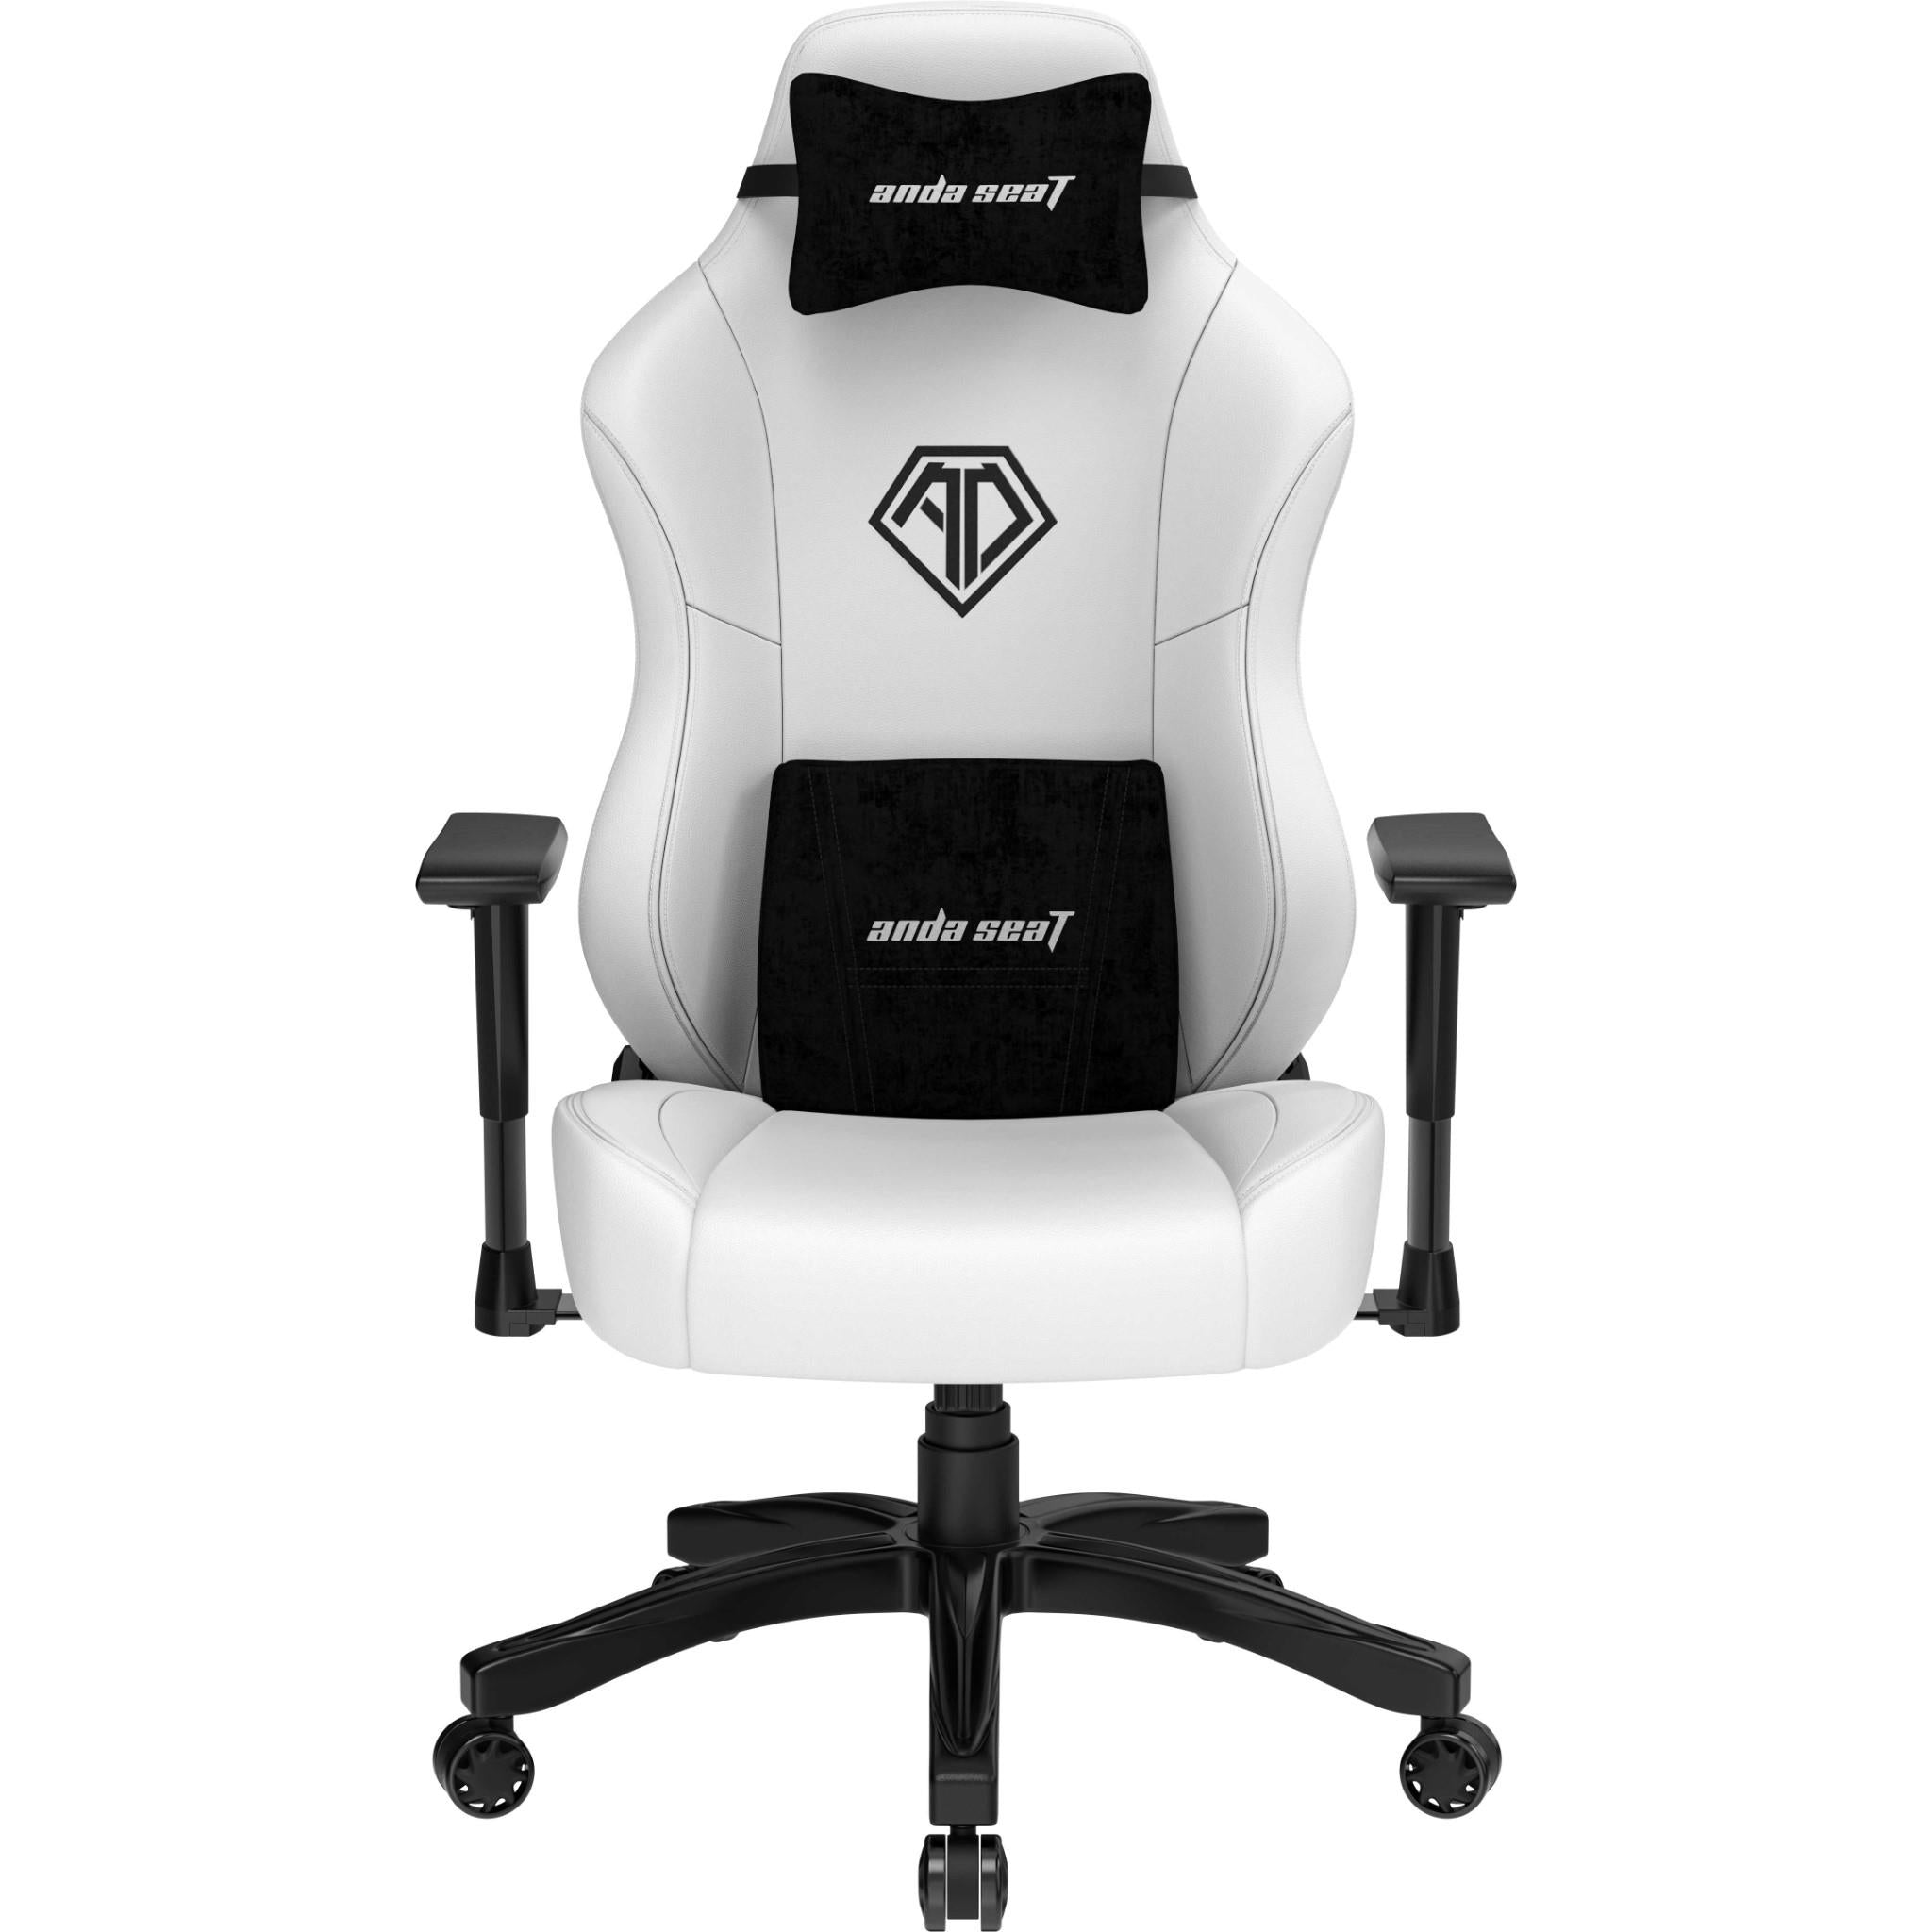 anda seat phantom 3 gaming chair white (large)